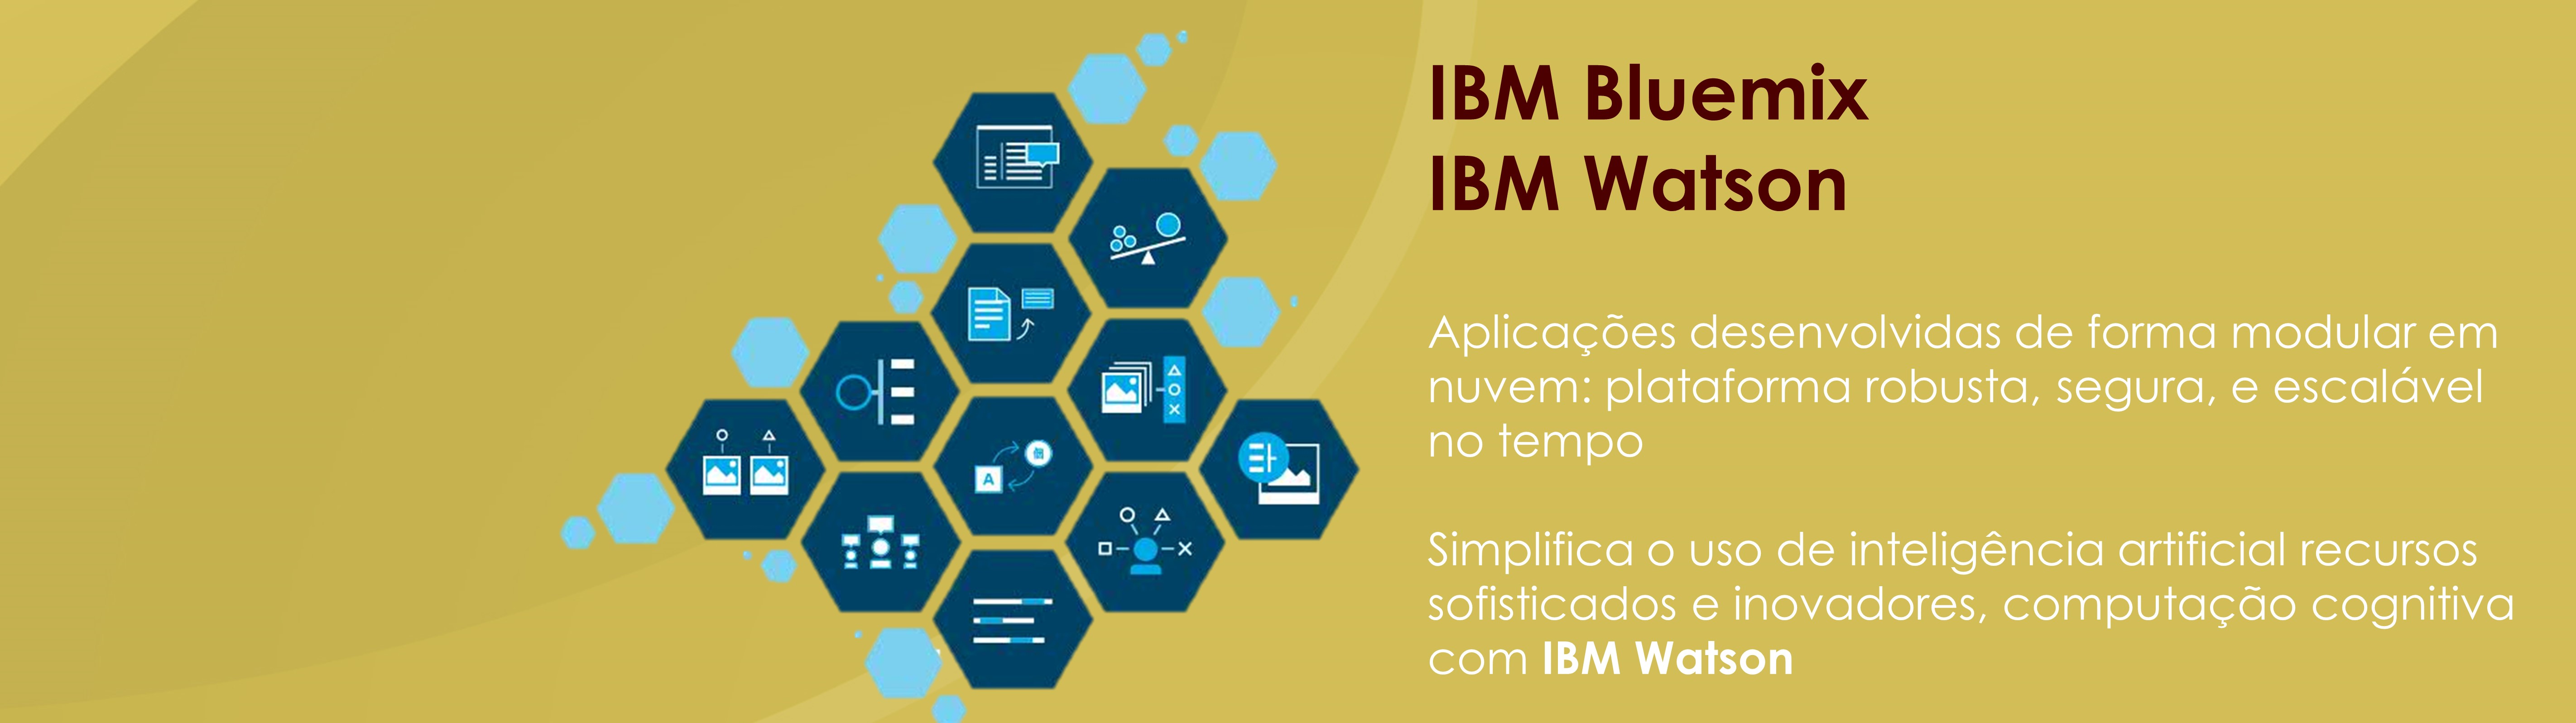 IBM Bluemix: Operação em núvem, IBM Watson: Computação Cognitiva